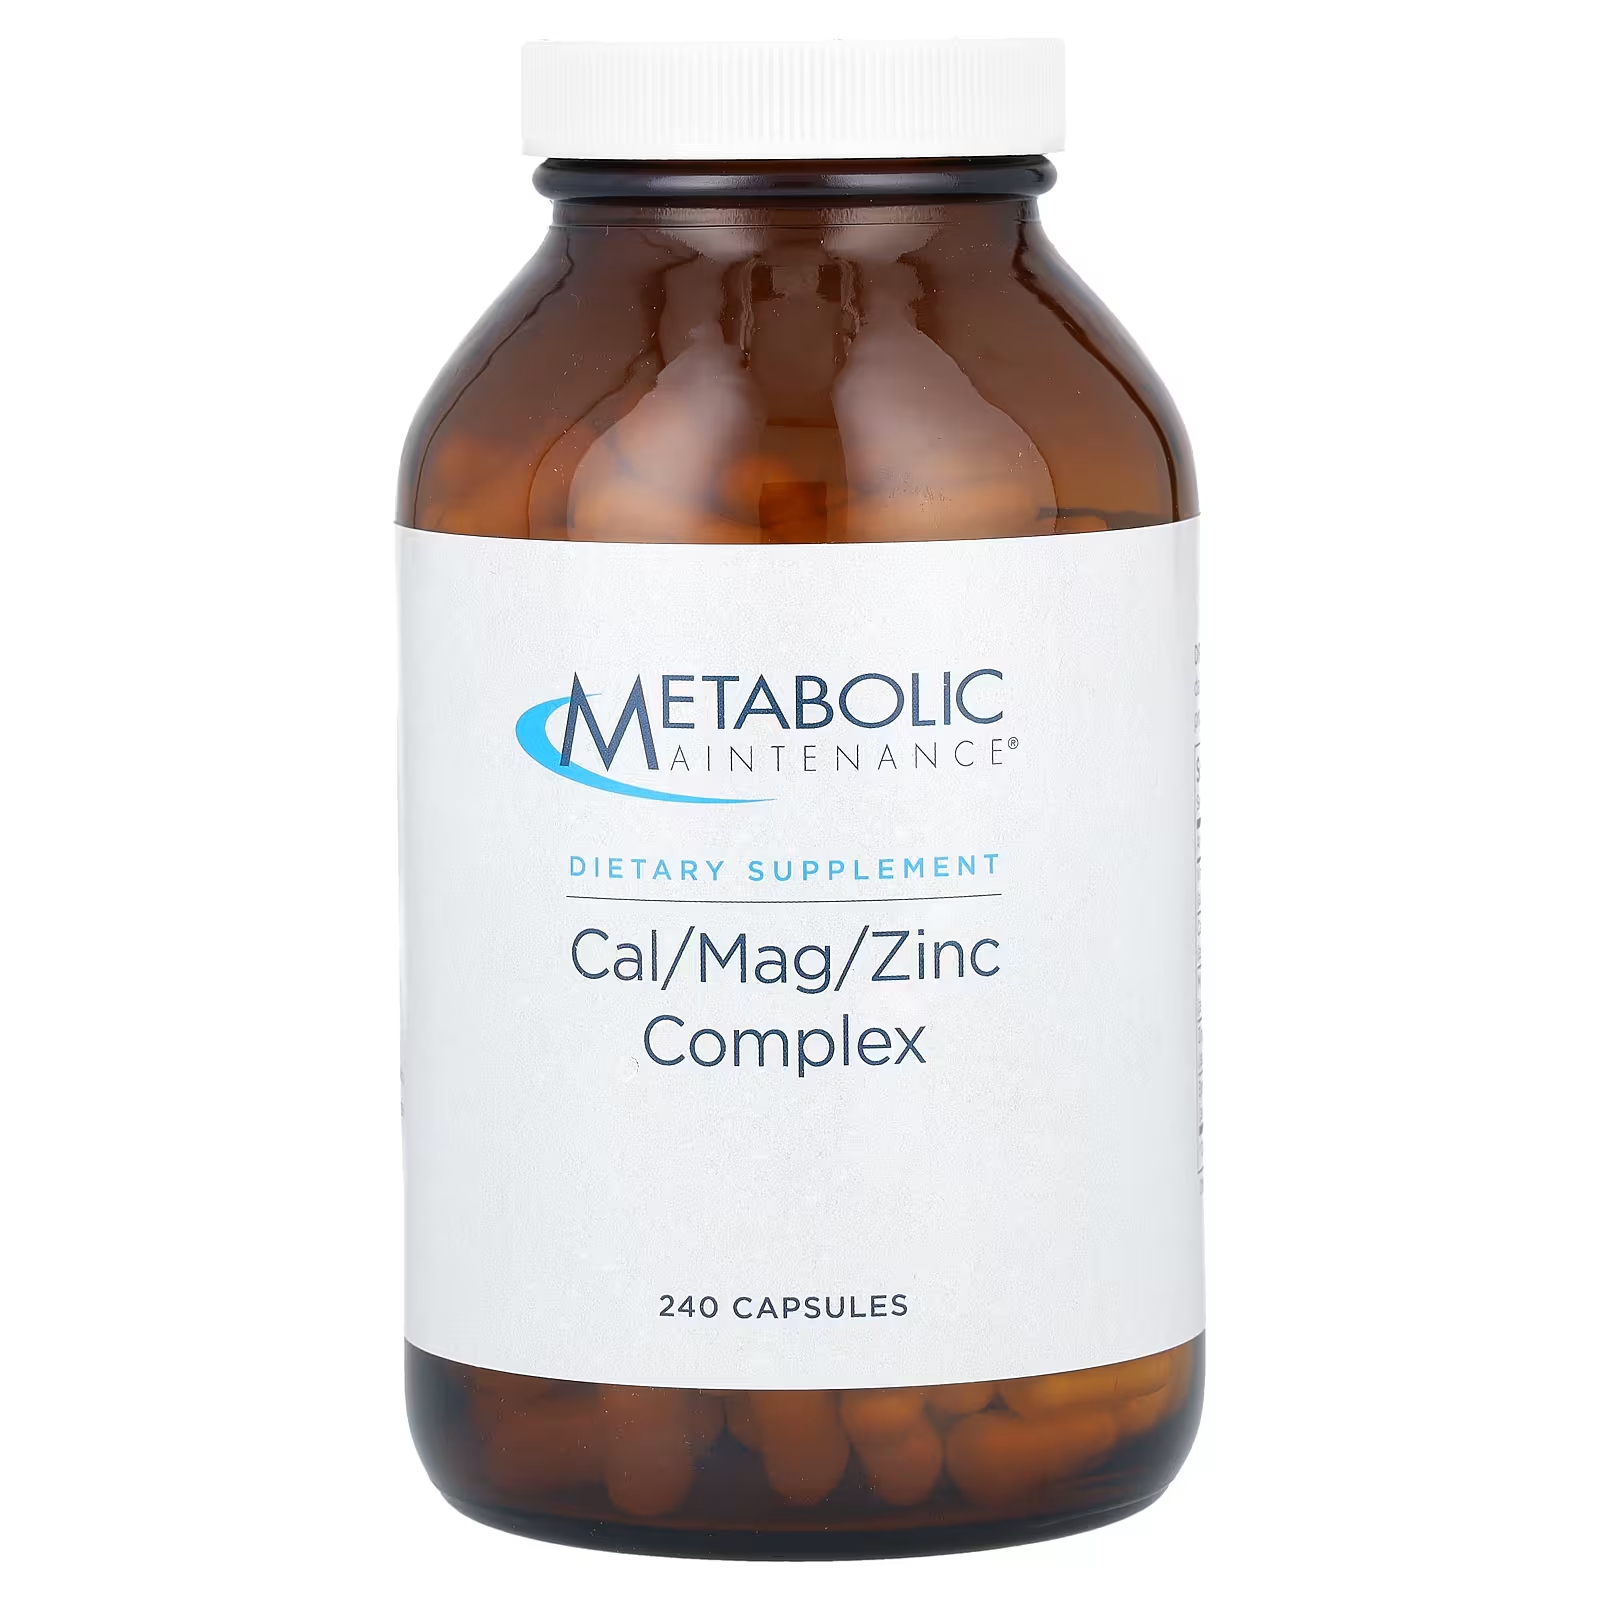 Метаболический комплекс Metabolic Maintenance Cal / Mag / Zinc, 240 капсул орехов н сумасшедшая книга